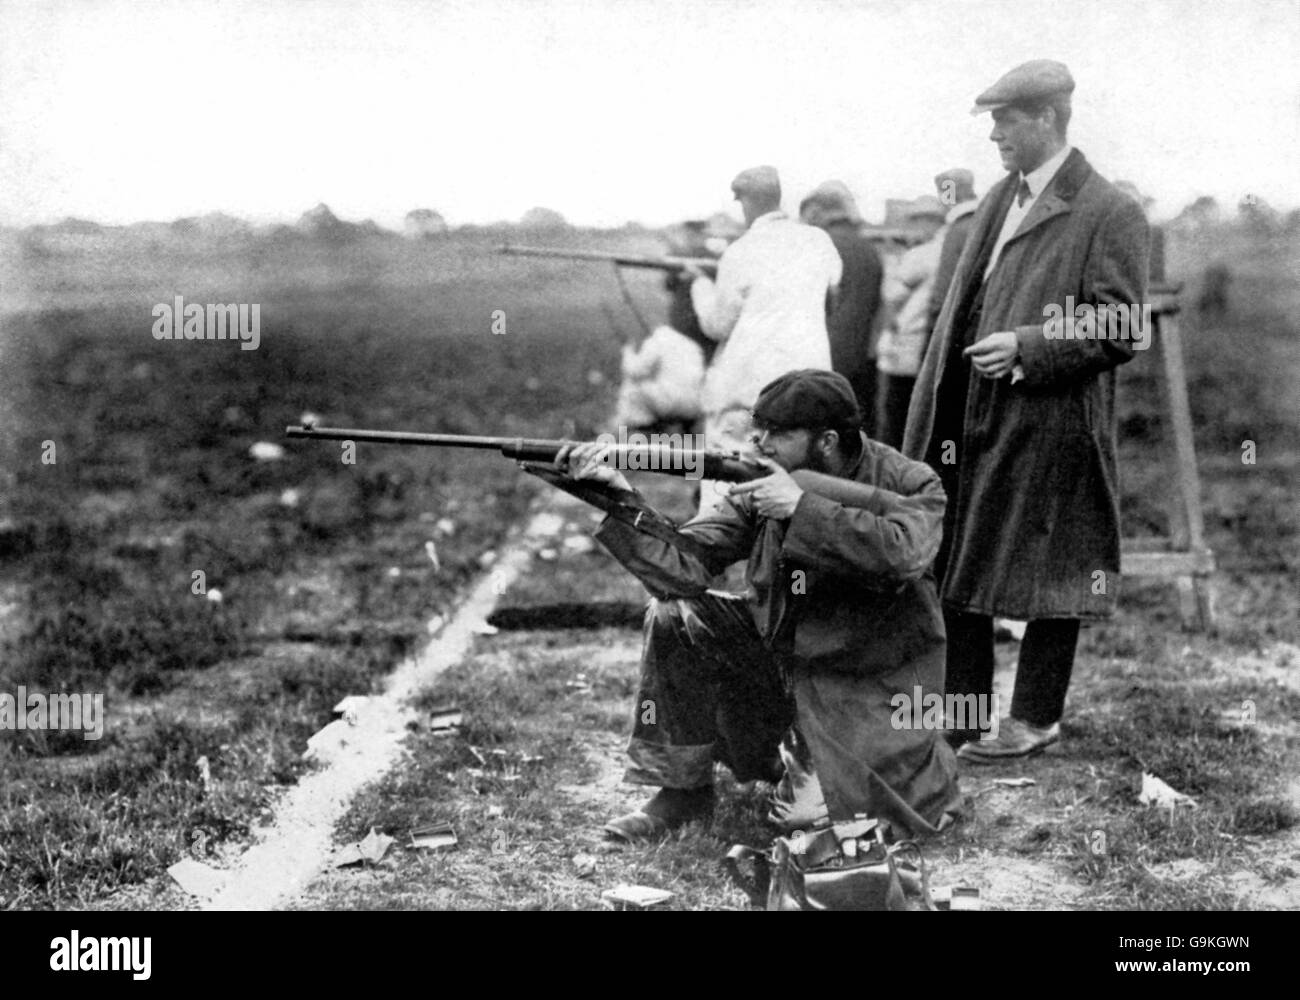 Tiro - Giochi Olimpici di Londra 1908 - Free Rifle - Bisley. Maurice Blood della Gran Bretagna, che ha vinto il bronzo nella disciplina del fucile libero, ha la mira Foto Stock